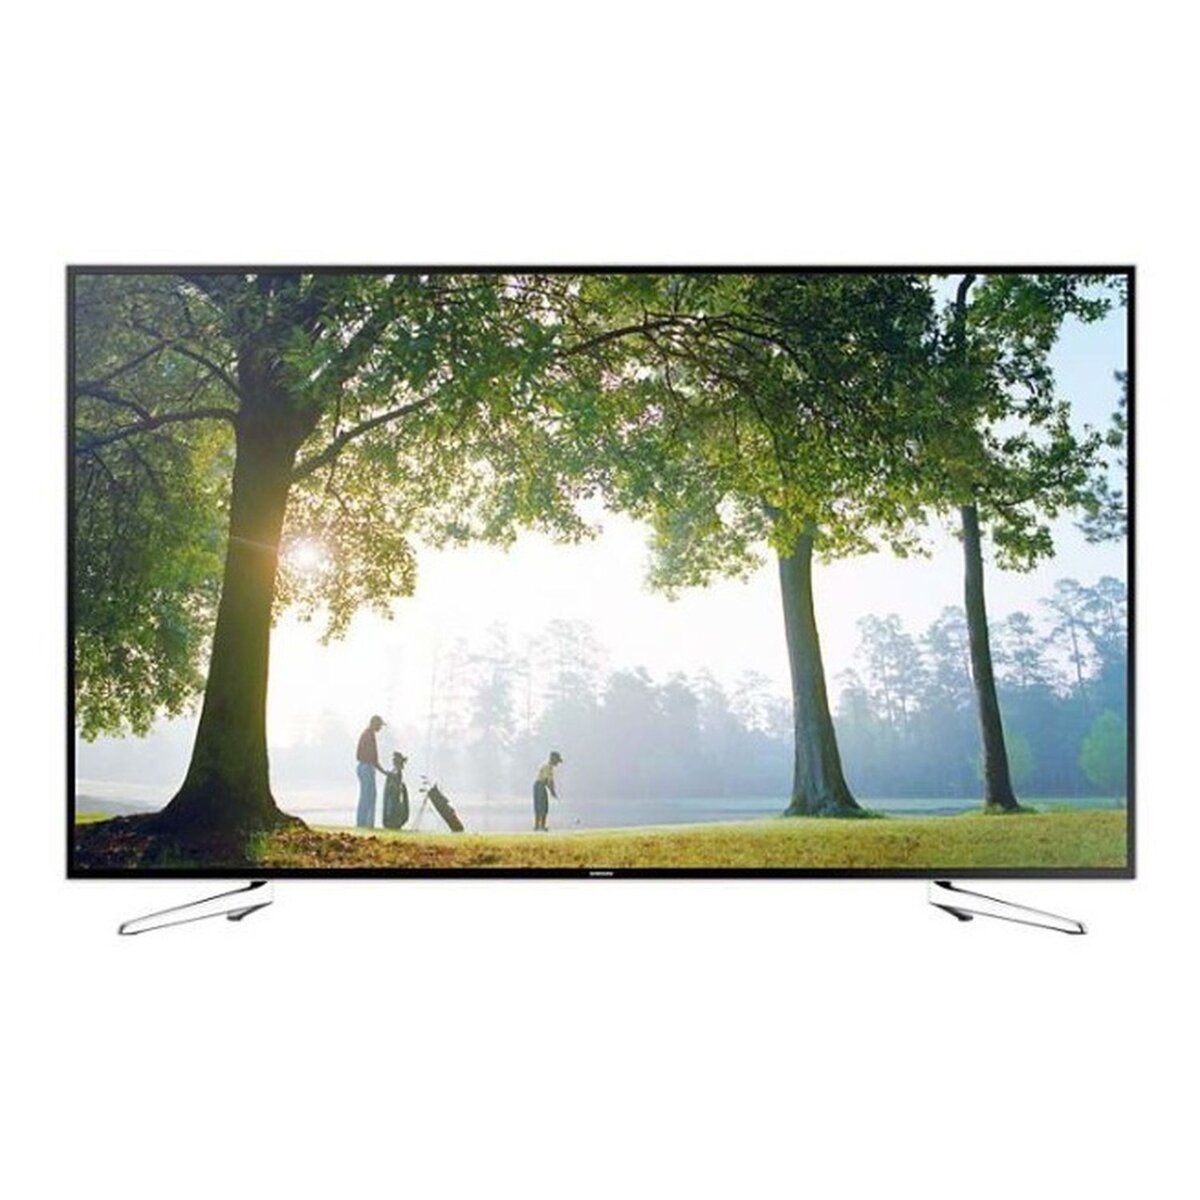 SAMSUNG UE75H6400 TV LED Full HD 189 cm Smart TV